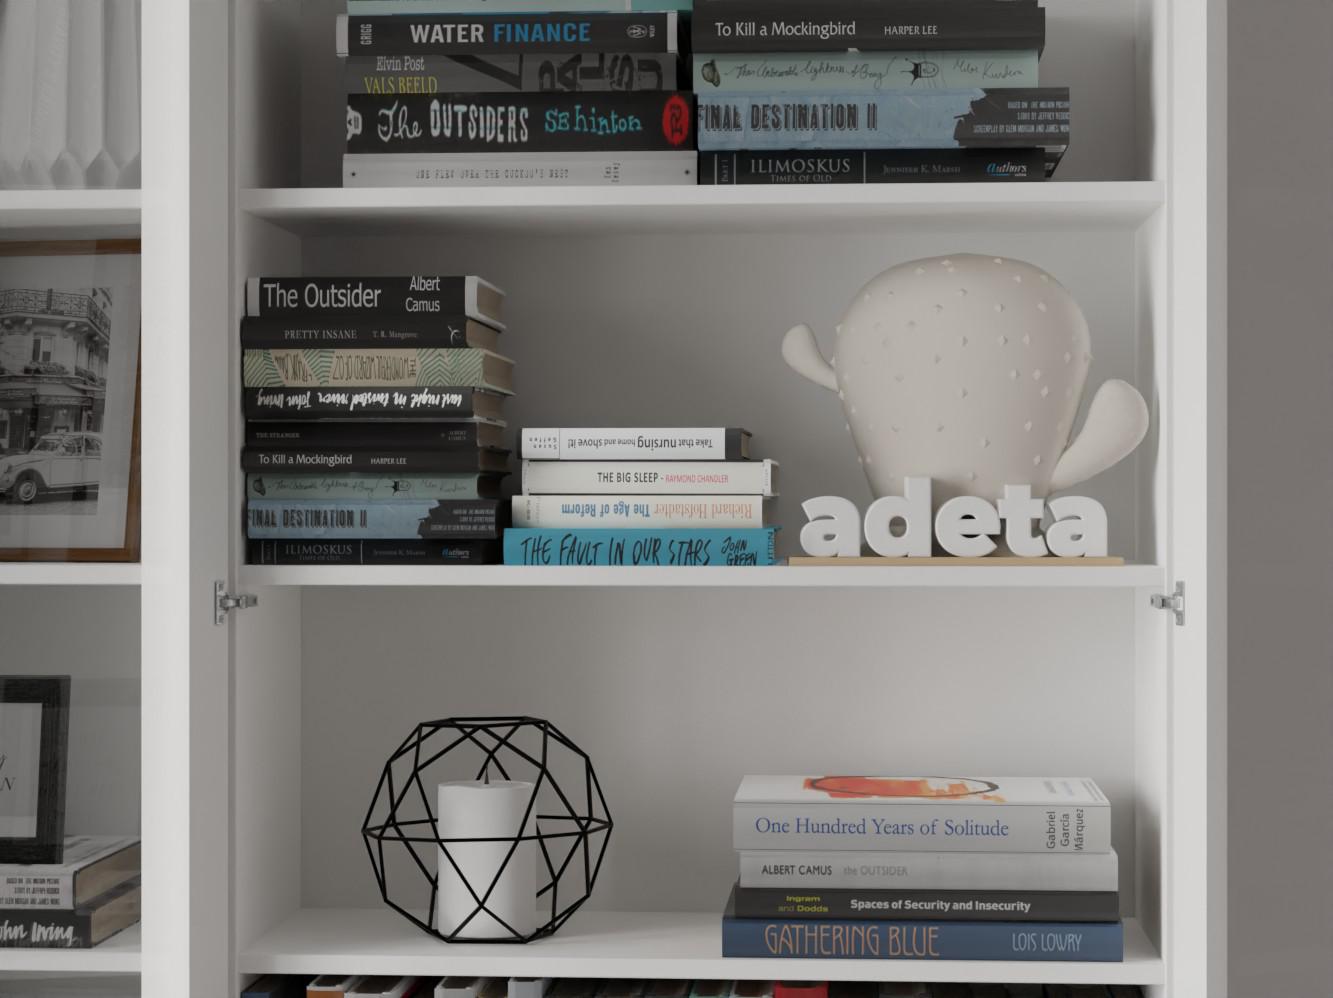 Изображение товара Книжный шкаф Билли 370 white ИКЕА (IKEA), 240x30x237 см на сайте adeta.ru